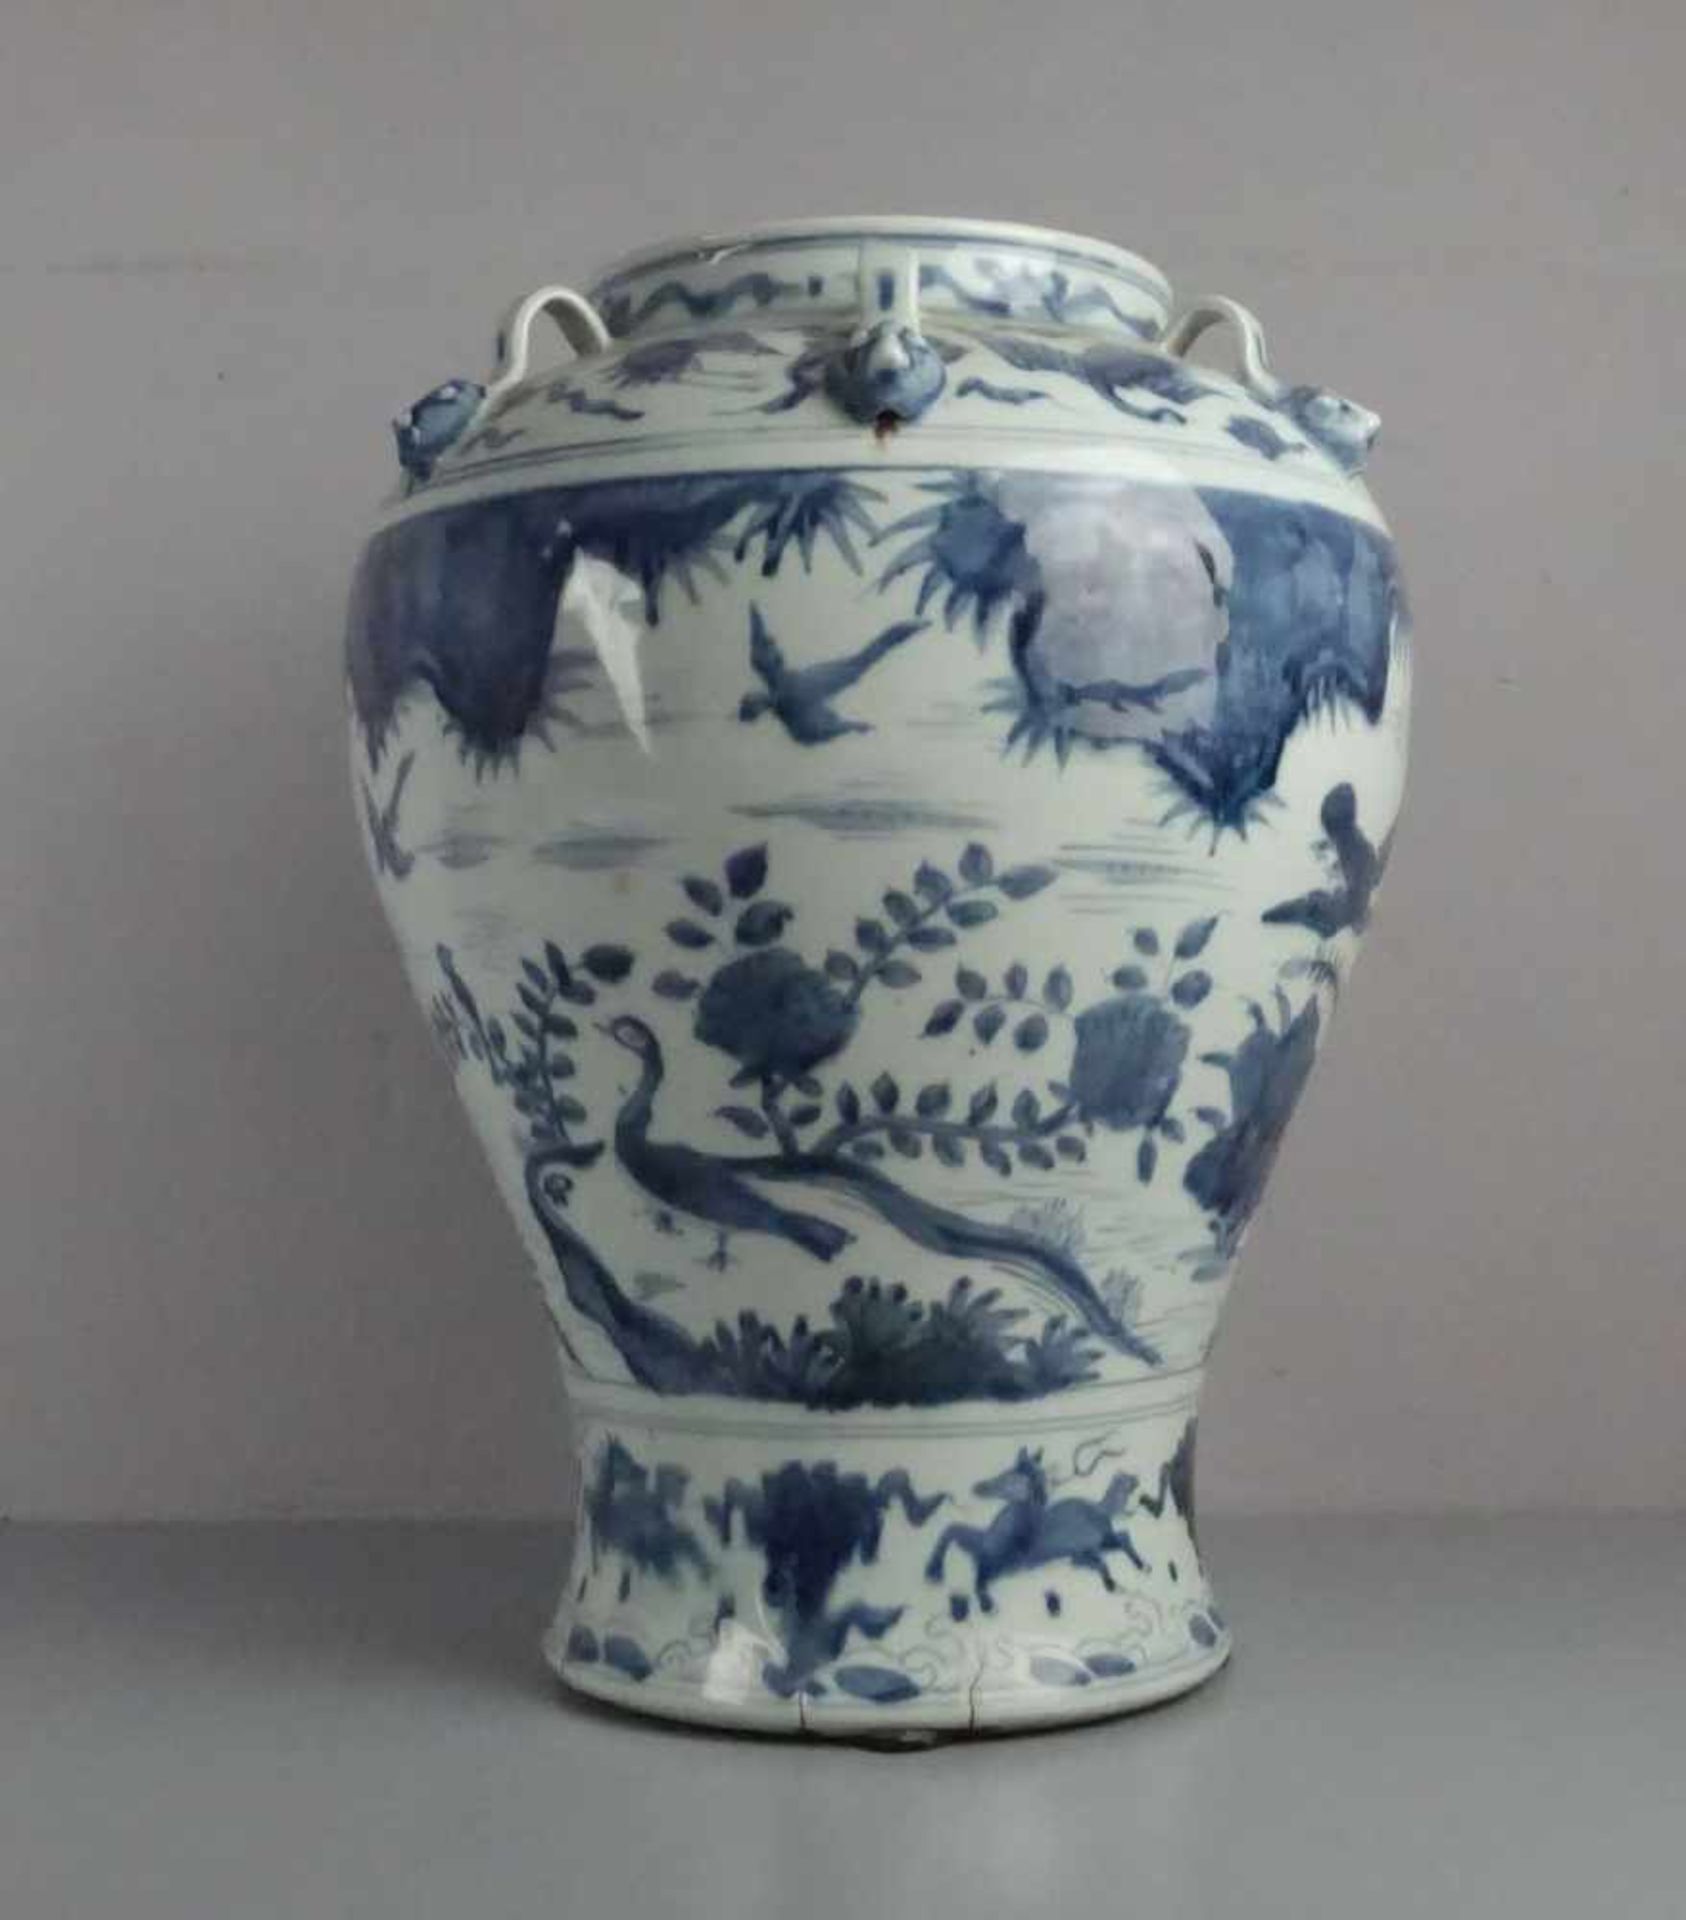 CHINESISCHE VASE, Porzellan (ungemarkt), späte Qing Dynastie. Balusterform mit kurzem Hals und 6 - Bild 3 aus 3